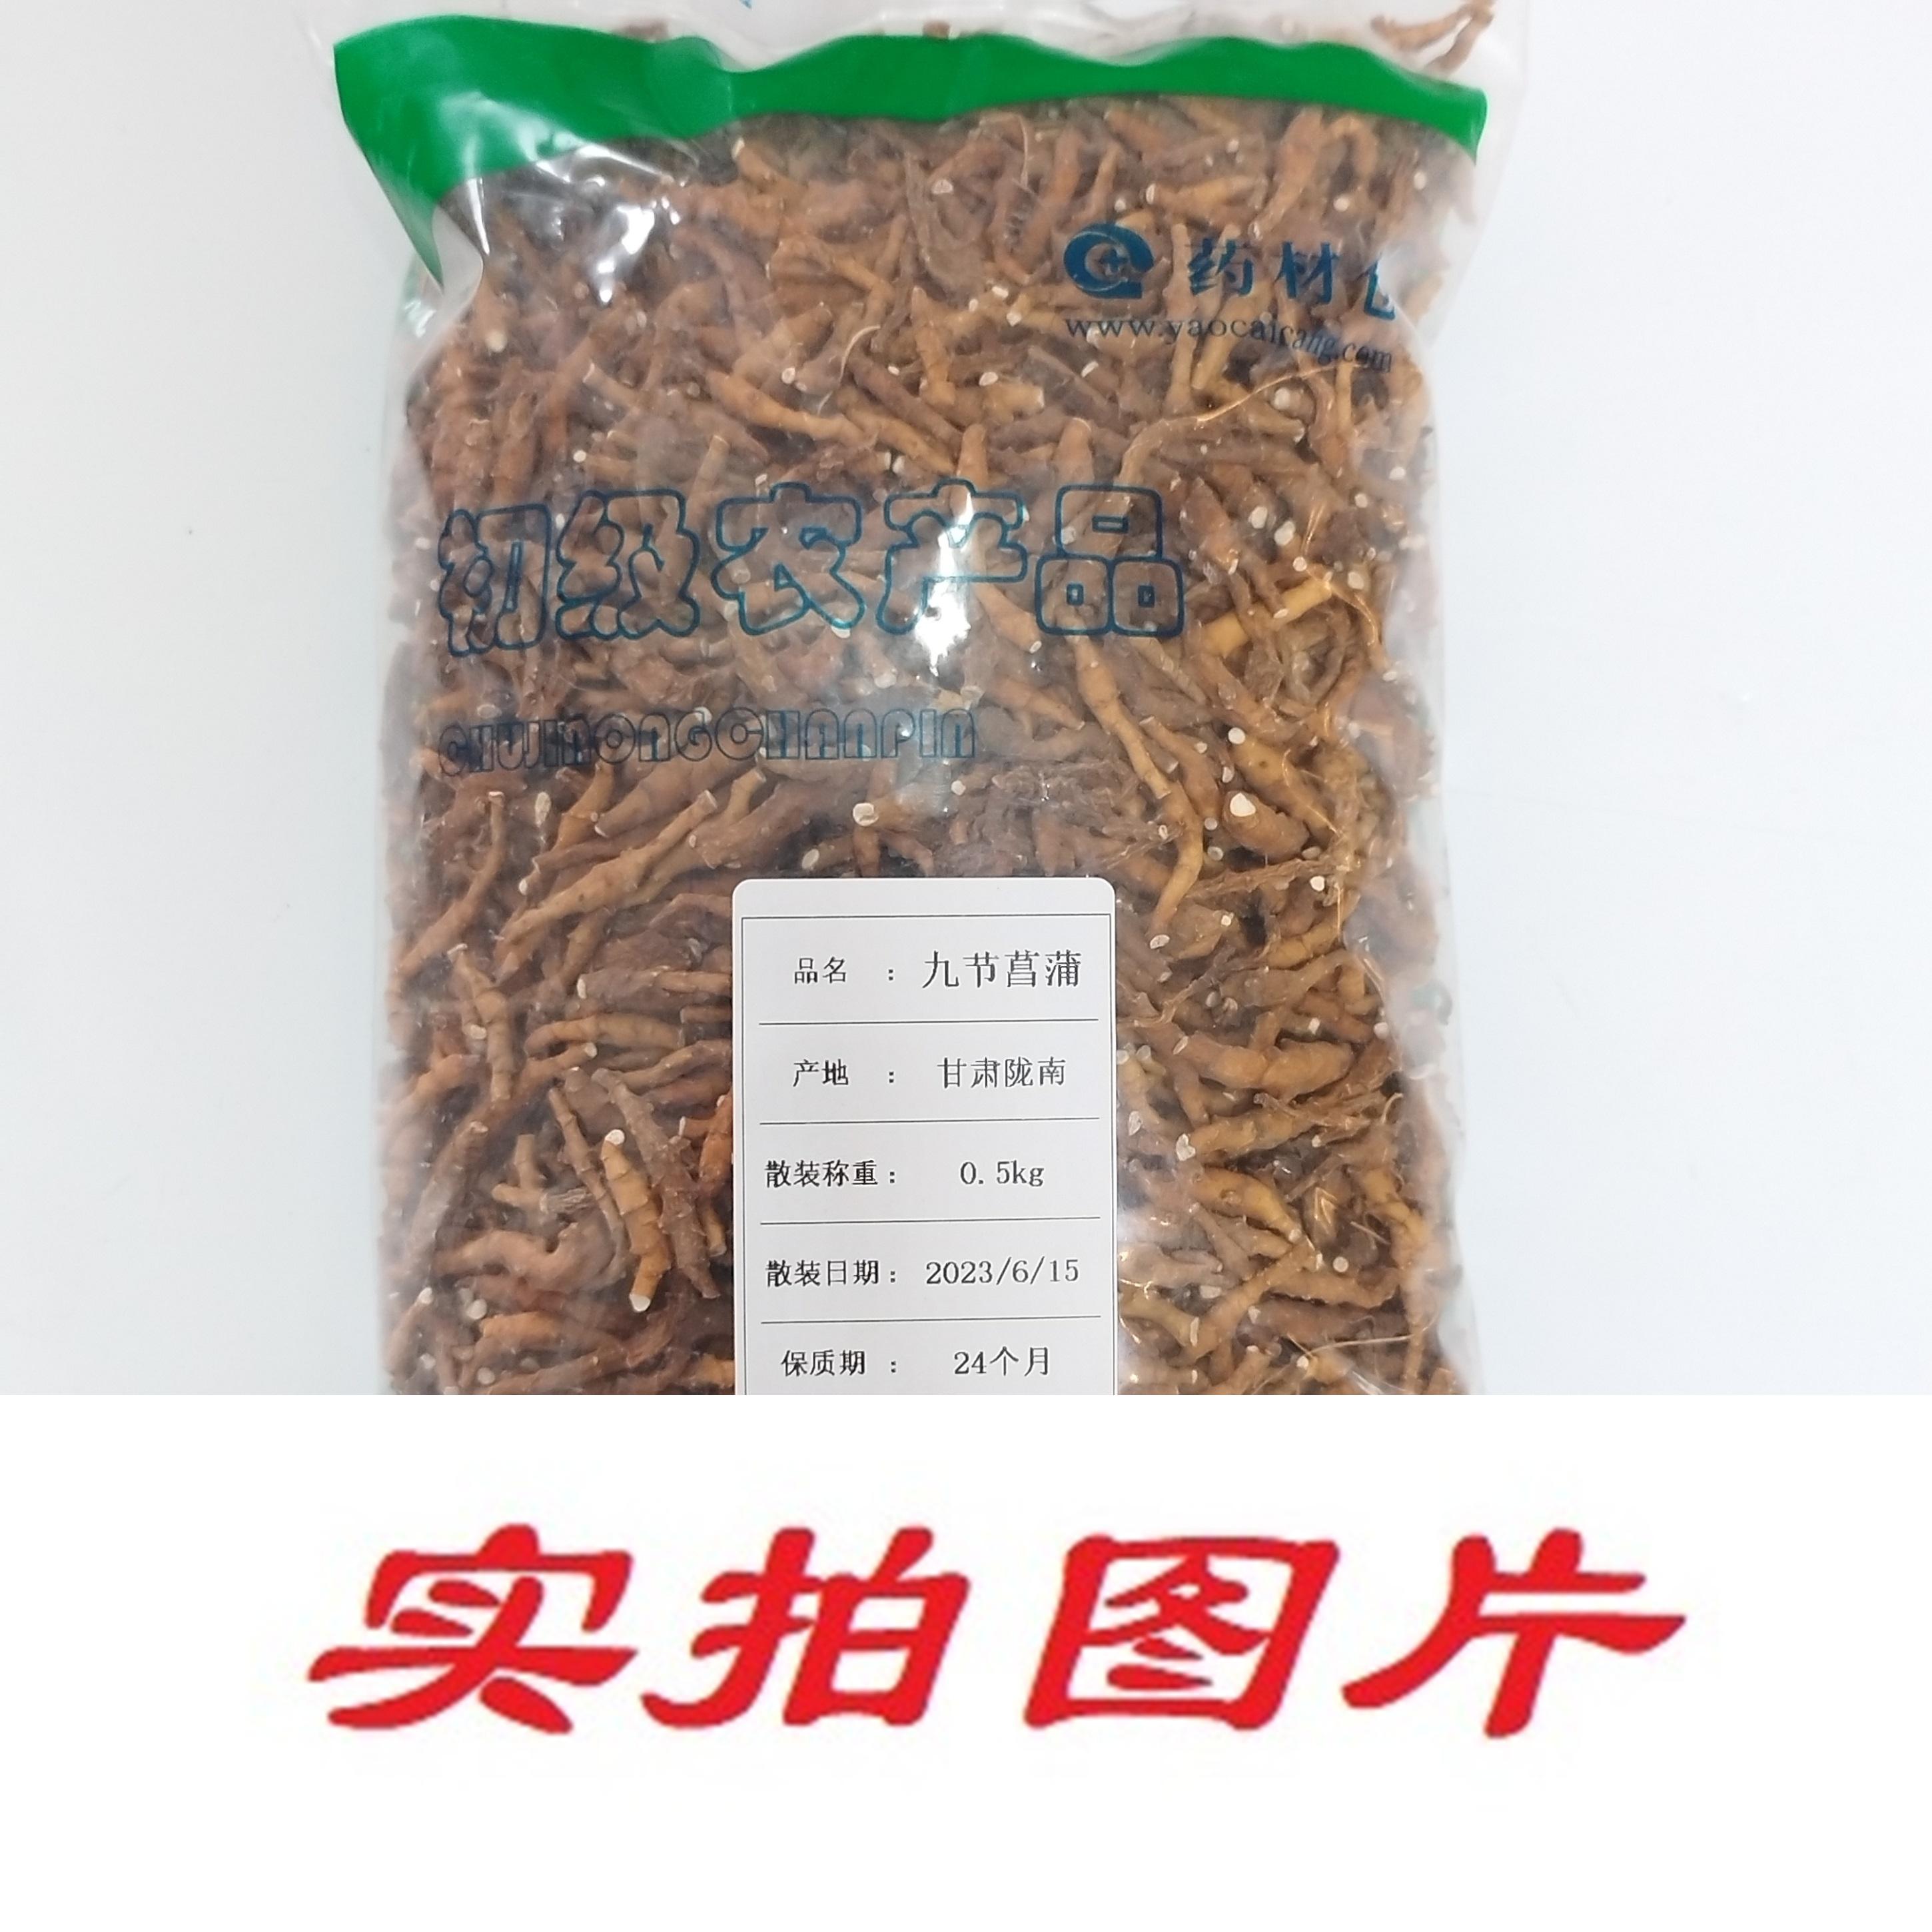 【】九节菖蒲0.5kg-农副产品